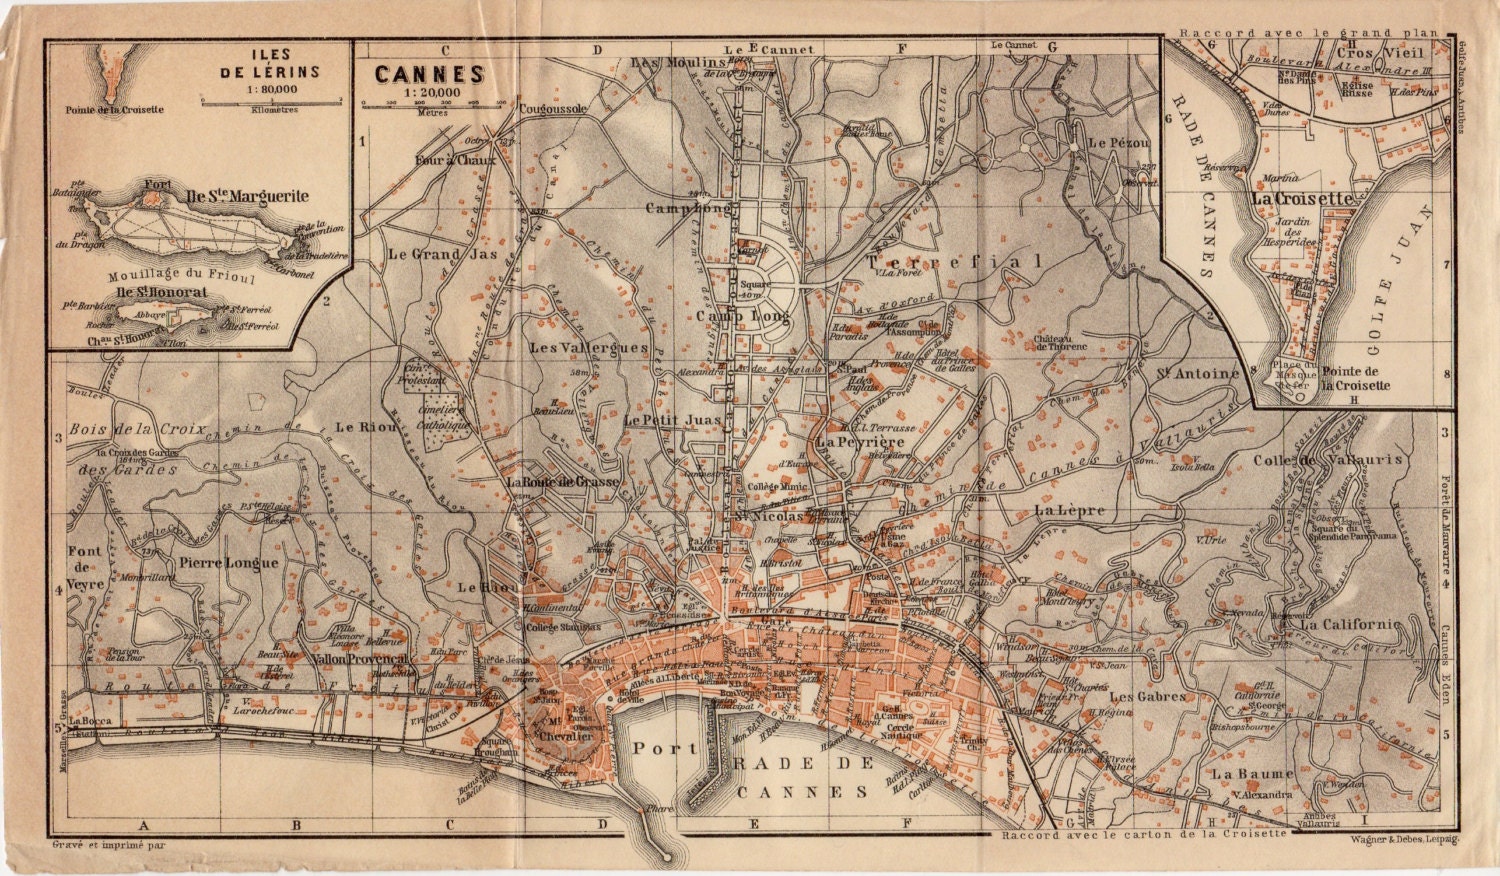 1914 Cannes, France, Alpes-Maritimes Department, Cannes City Map, Provence-Alpes-CÃ´te d'Azur Region, Iles de LÃ©rins, La Croisette - Craftissimo